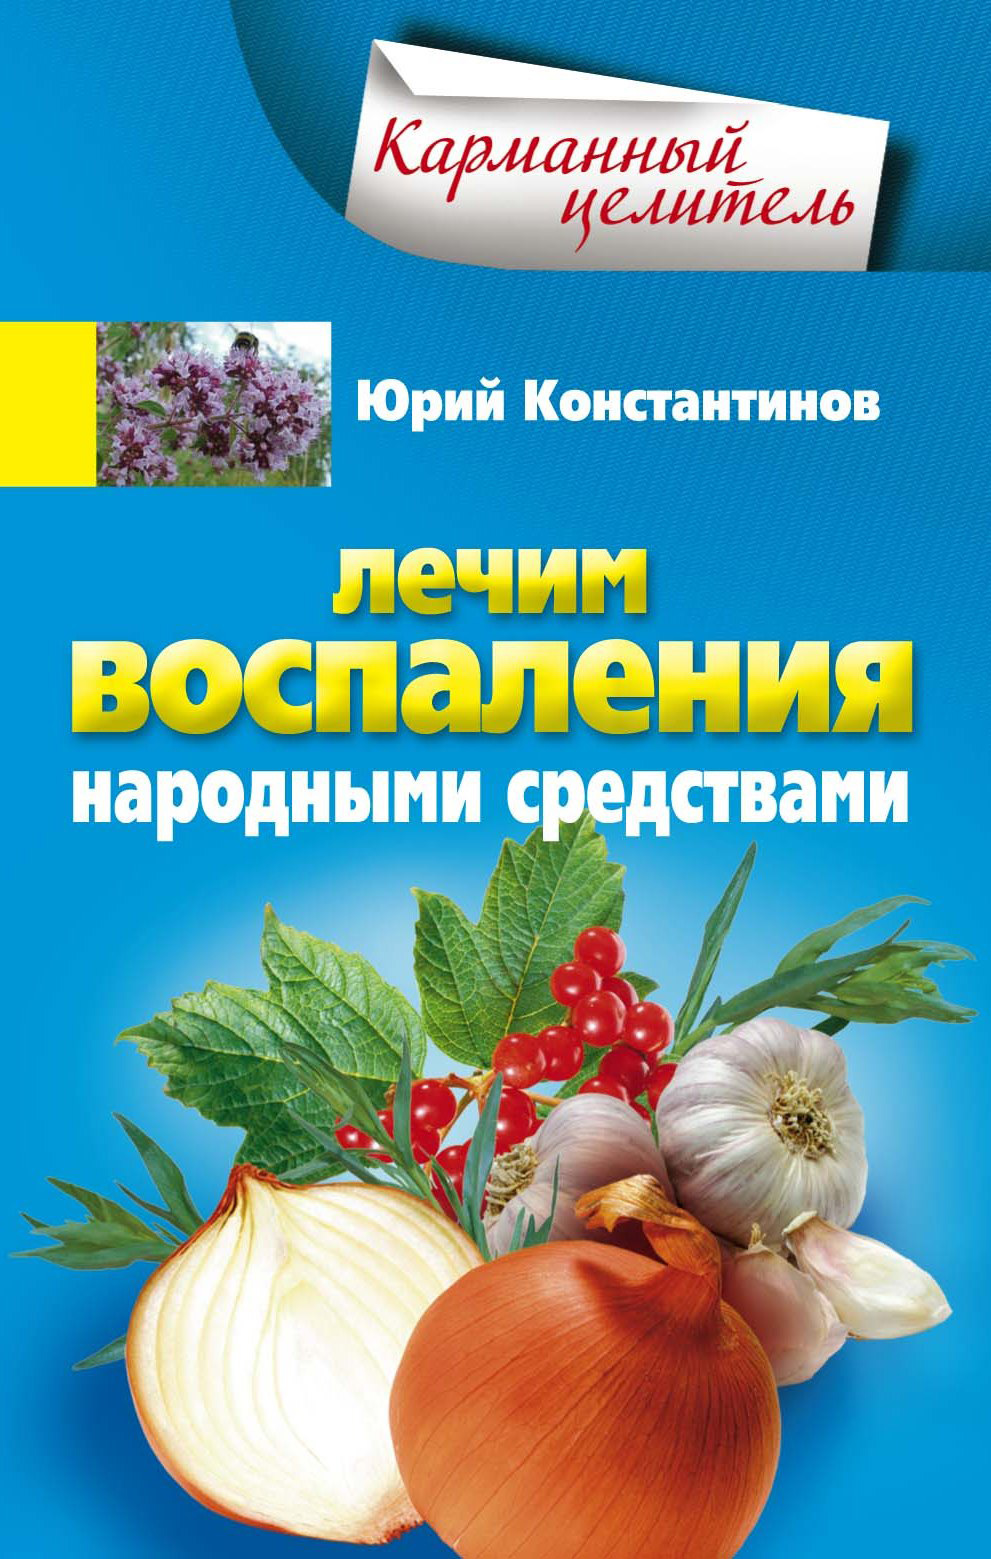 Народные средства лечения мастопатии | steklorez69.ru